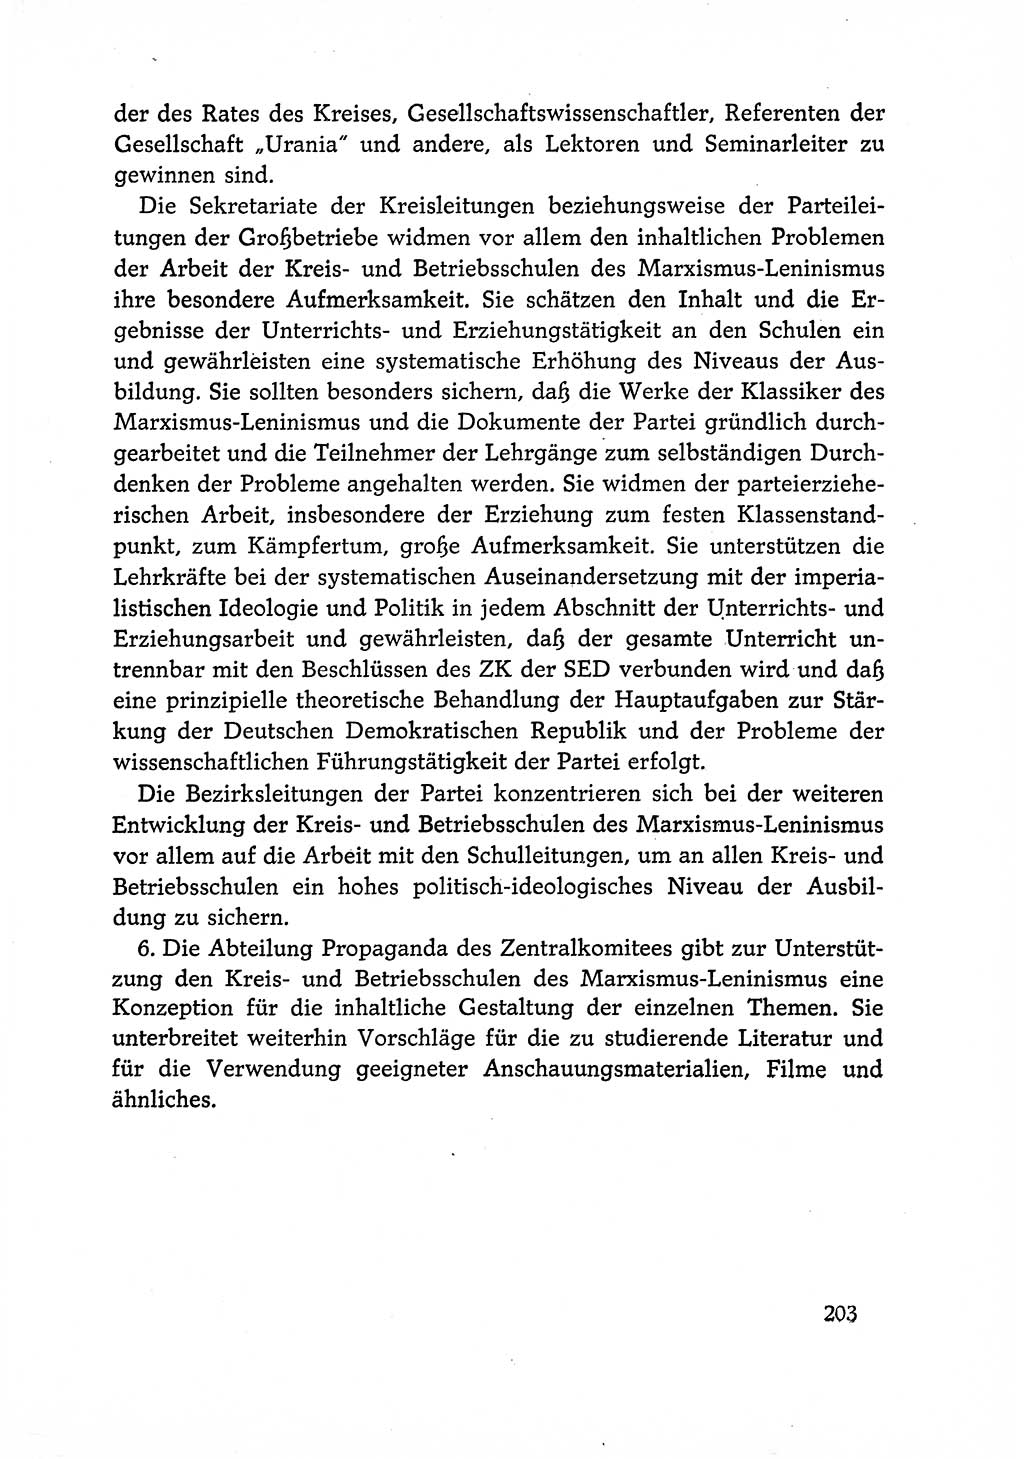 Dokumente der Sozialistischen Einheitspartei Deutschlands (SED) [Deutsche Demokratische Republik (DDR)] 1966-1967, Seite 203 (Dok. SED DDR 1966-1967, S. 203)